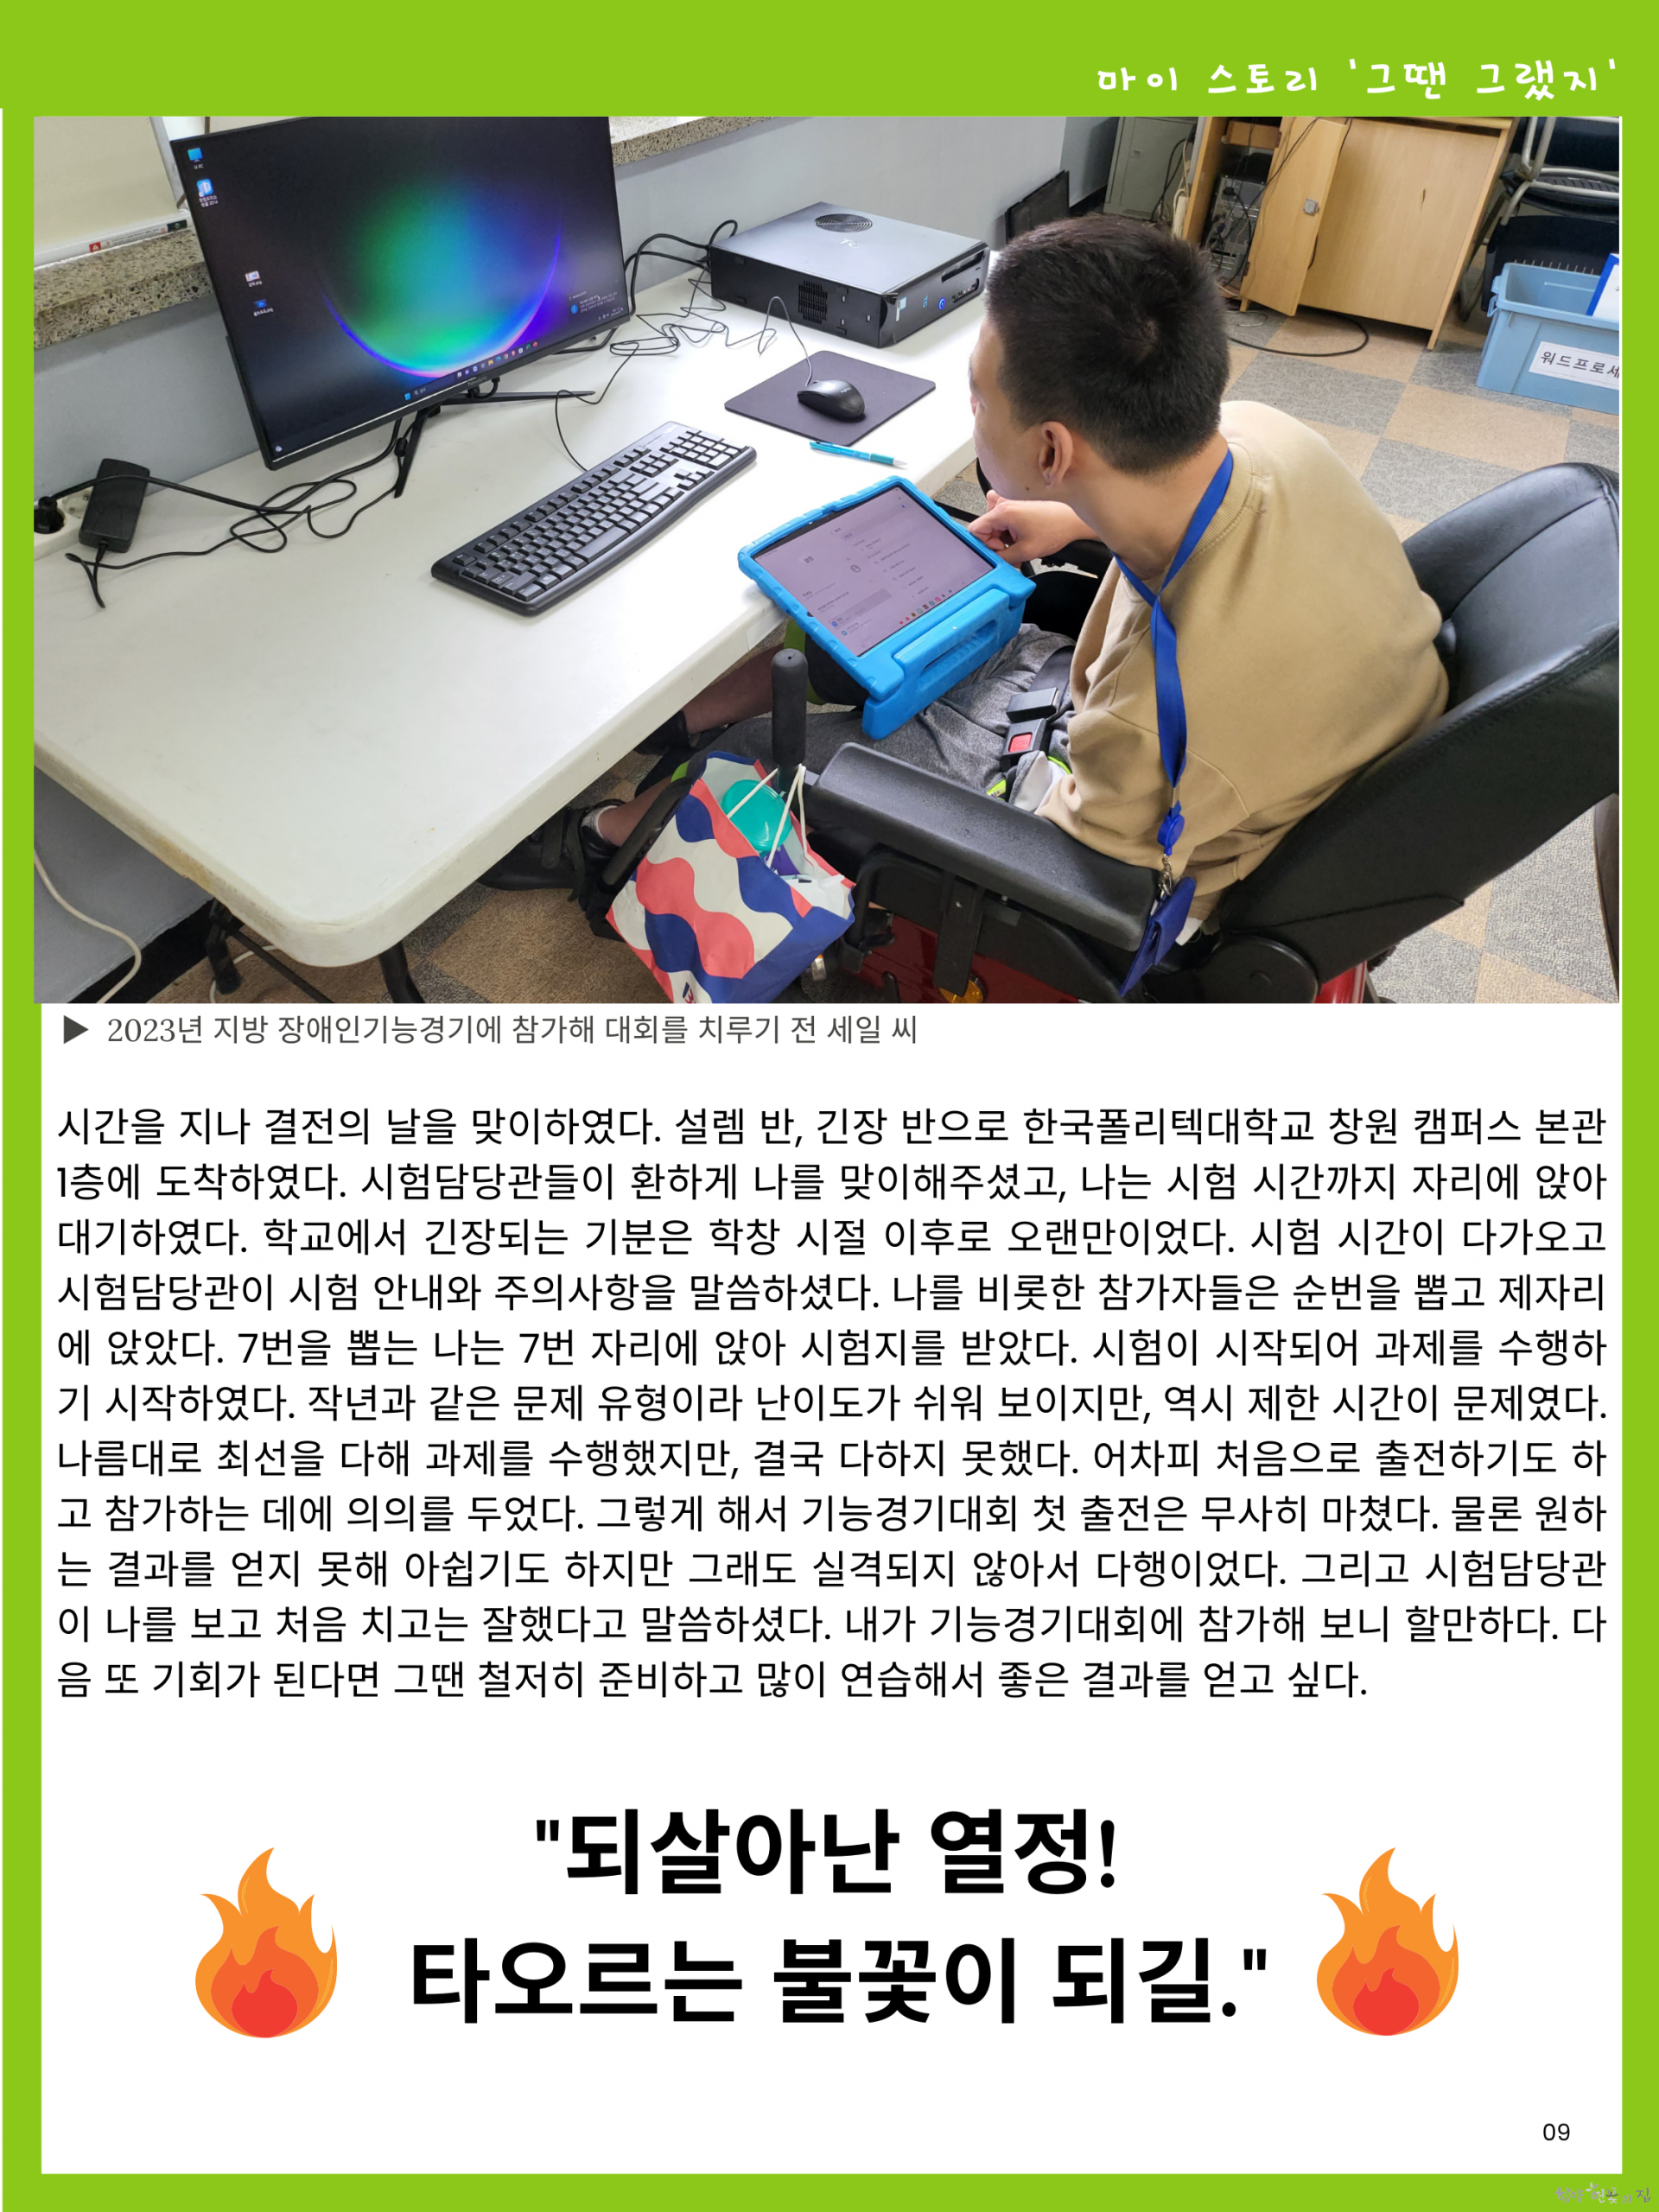 09.식구 수필 마이 스토리 - 박세일 씨의 기능경기대회 이야기 04.png